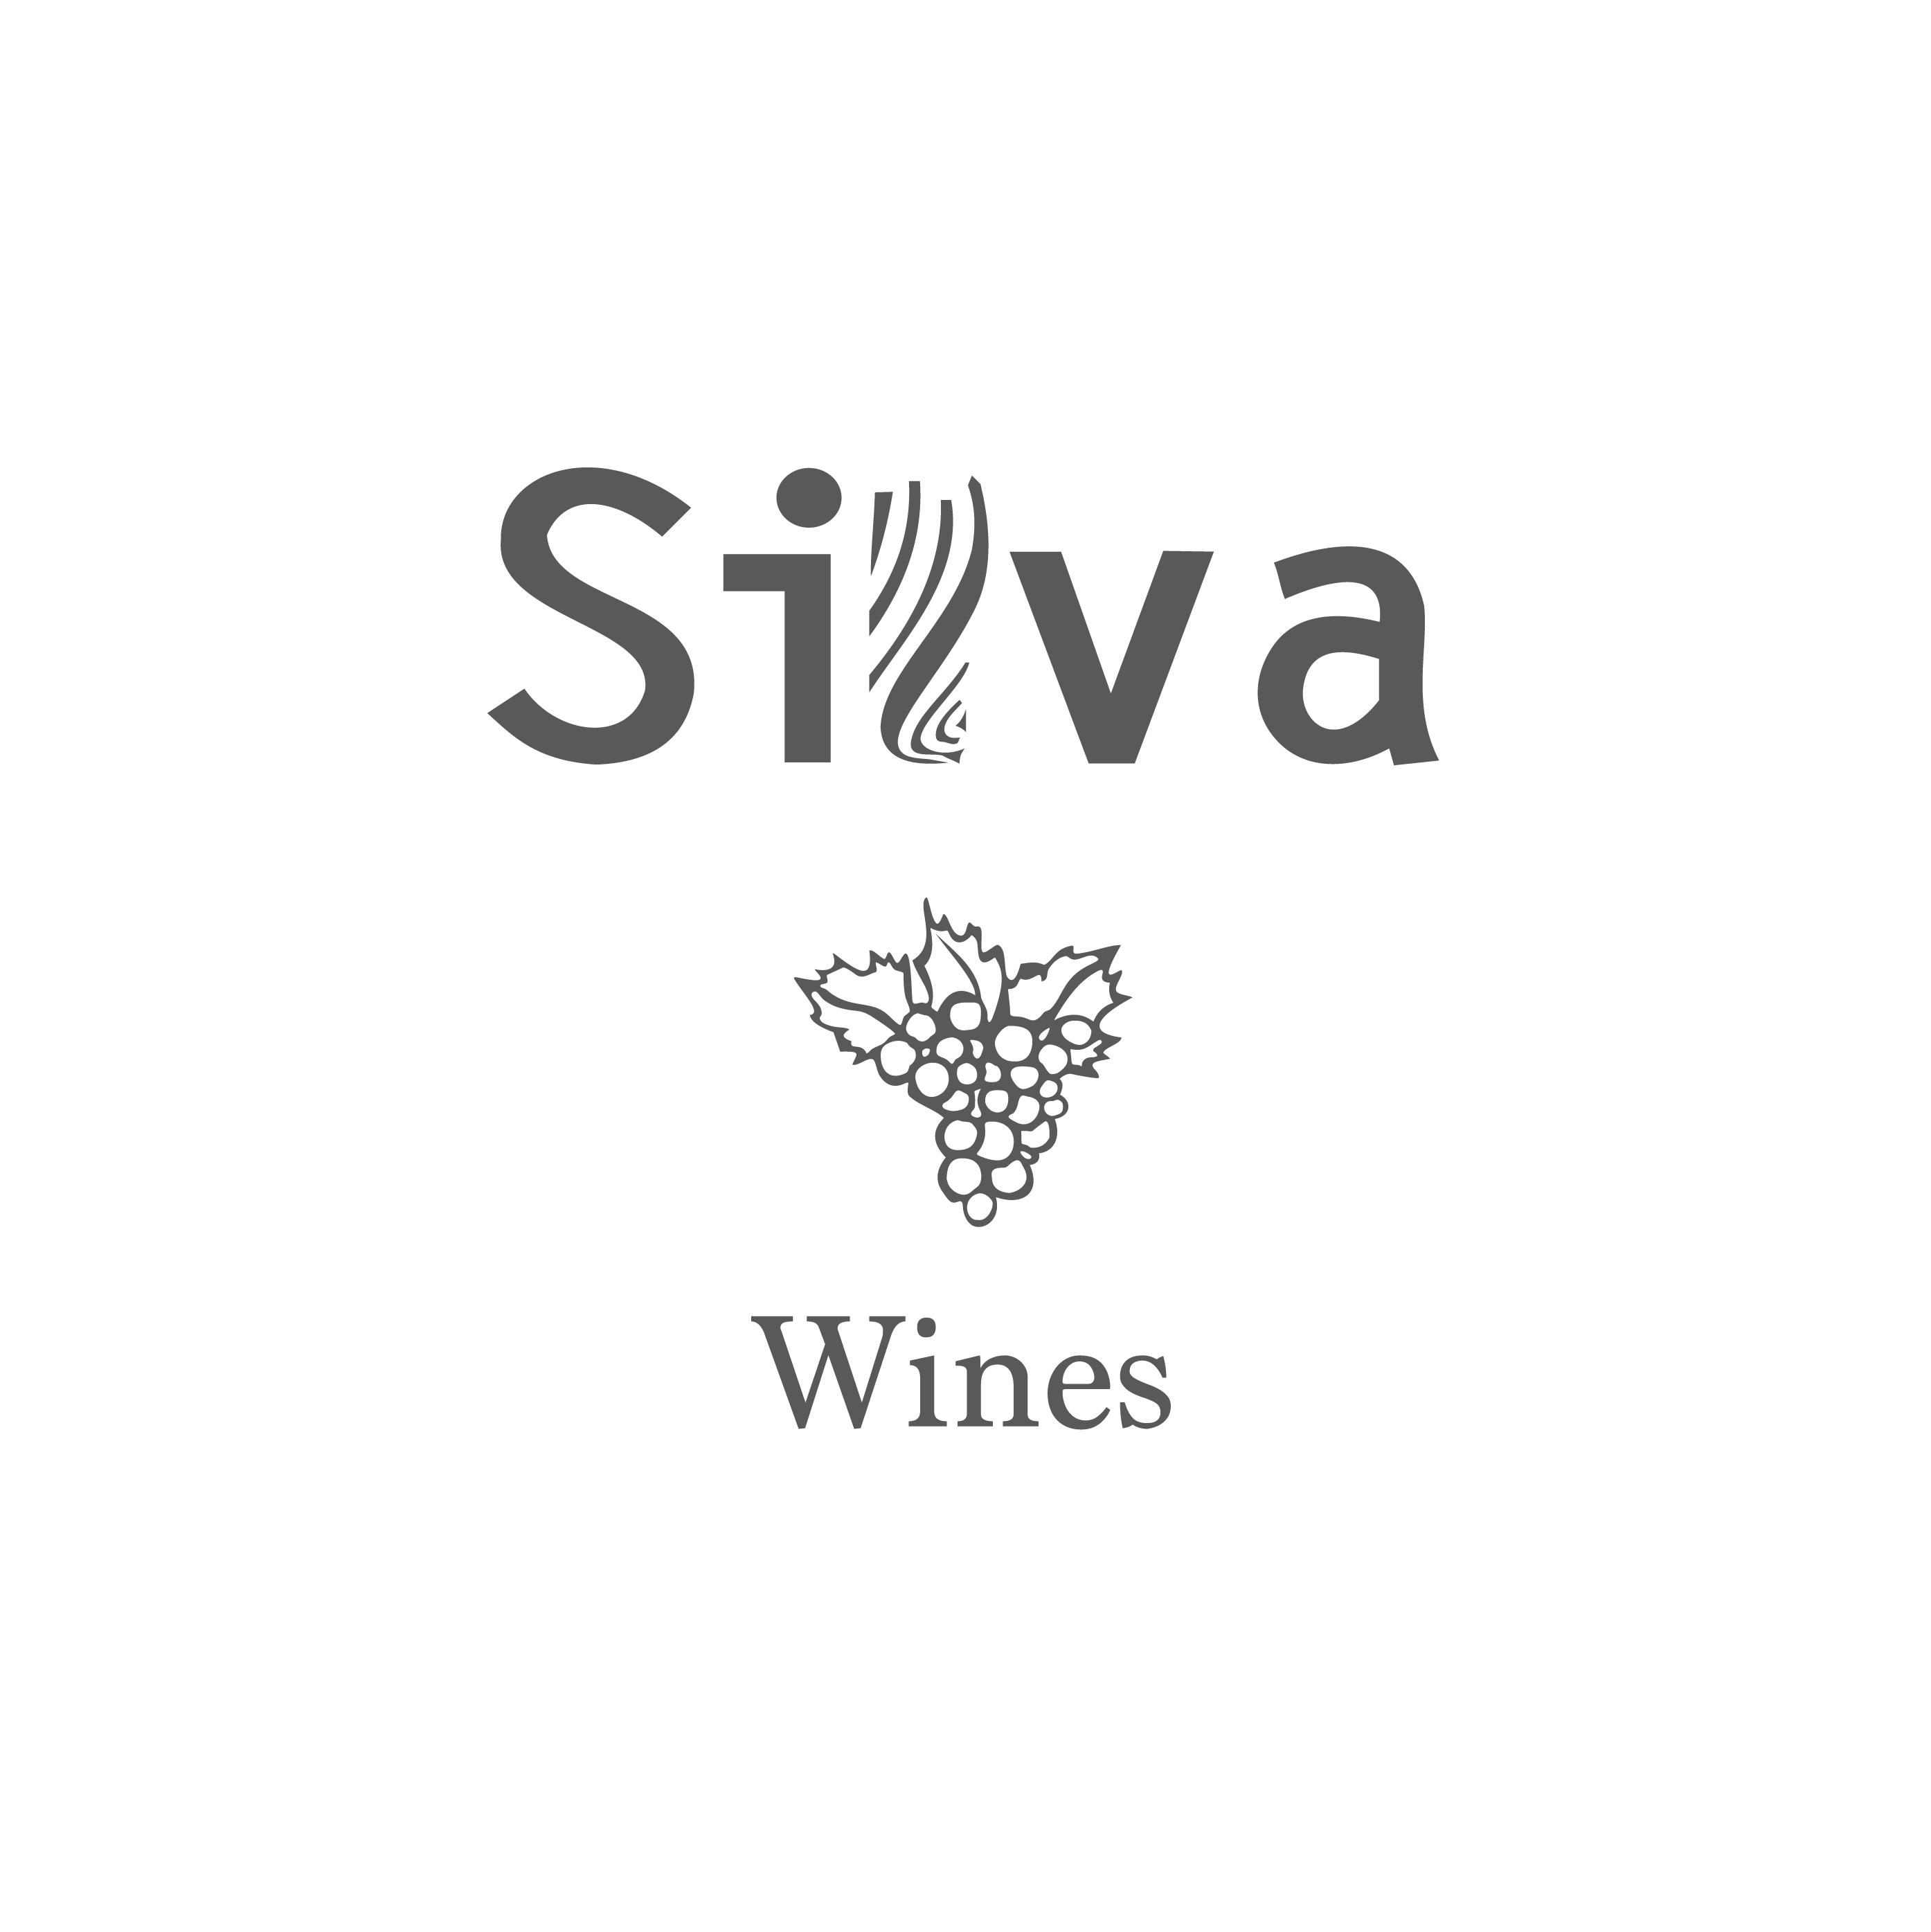 Silva daskalaki森林酒庄